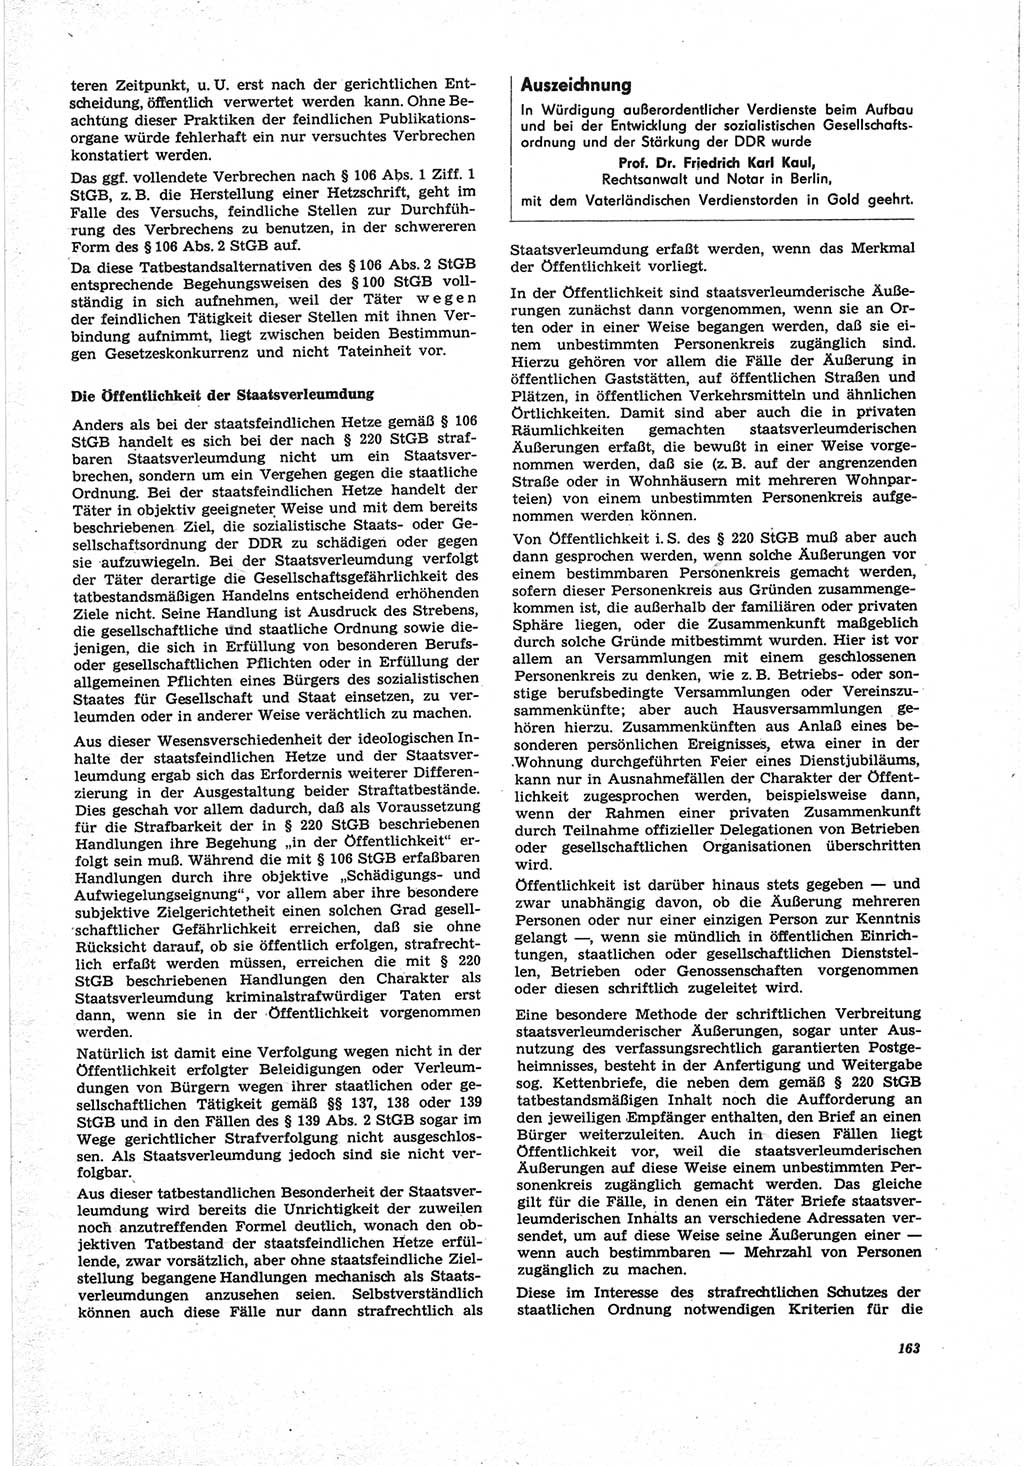 Neue Justiz (NJ), Zeitschrift für Recht und Rechtswissenschaft [Deutsche Demokratische Republik (DDR)], 25. Jahrgang 1971, Seite 163 (NJ DDR 1971, S. 163)